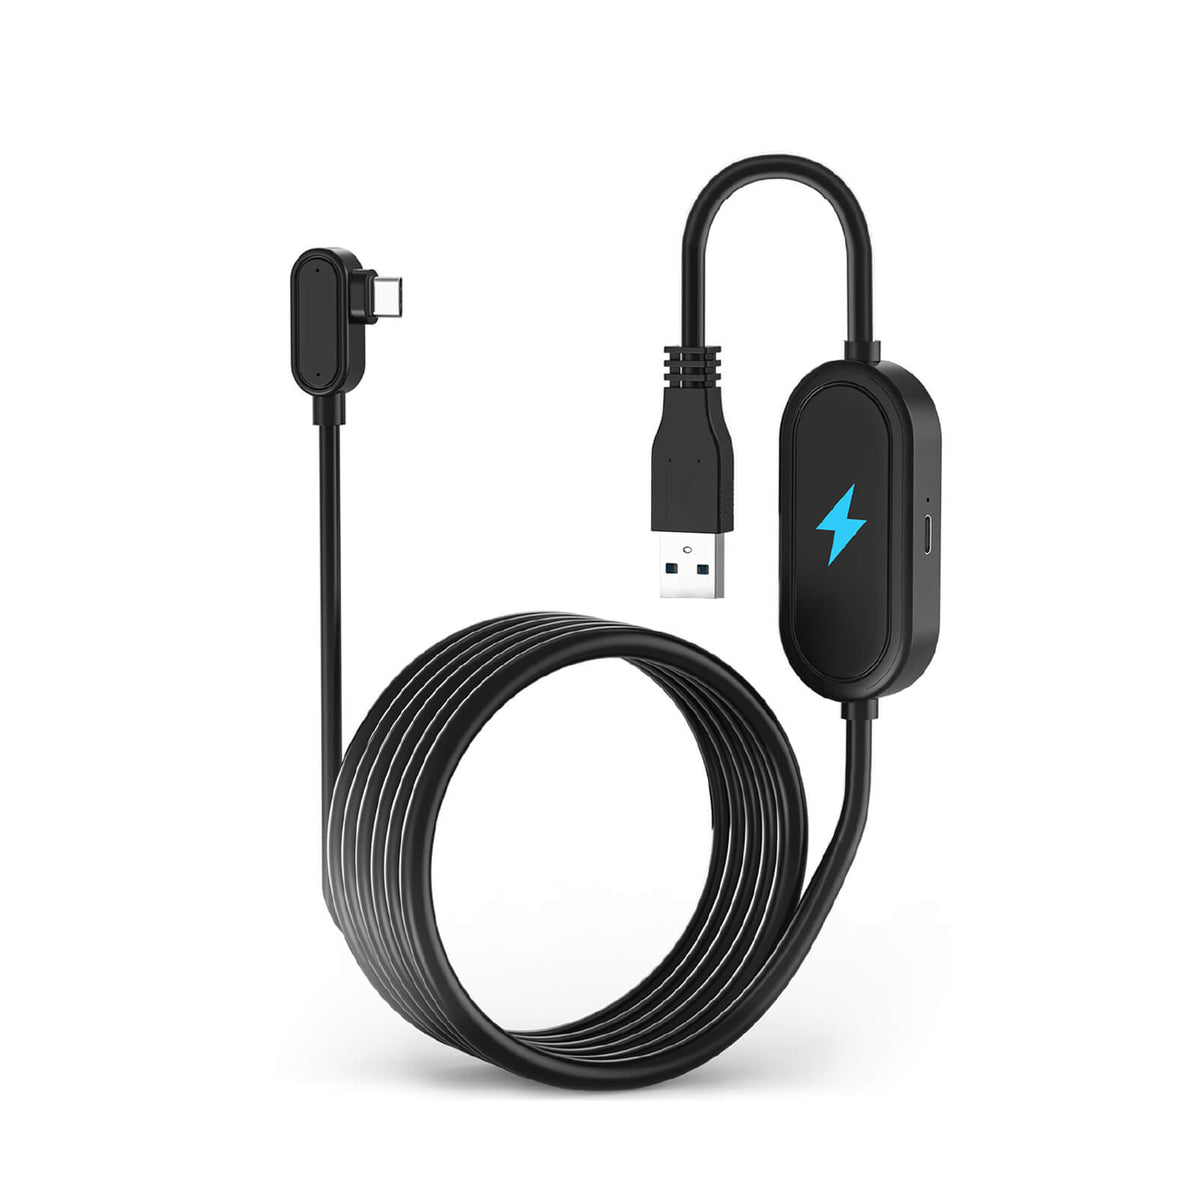 ZyberVR 16FT/5M USB 3.0 A a C Steam VR Cable de carga y juegos